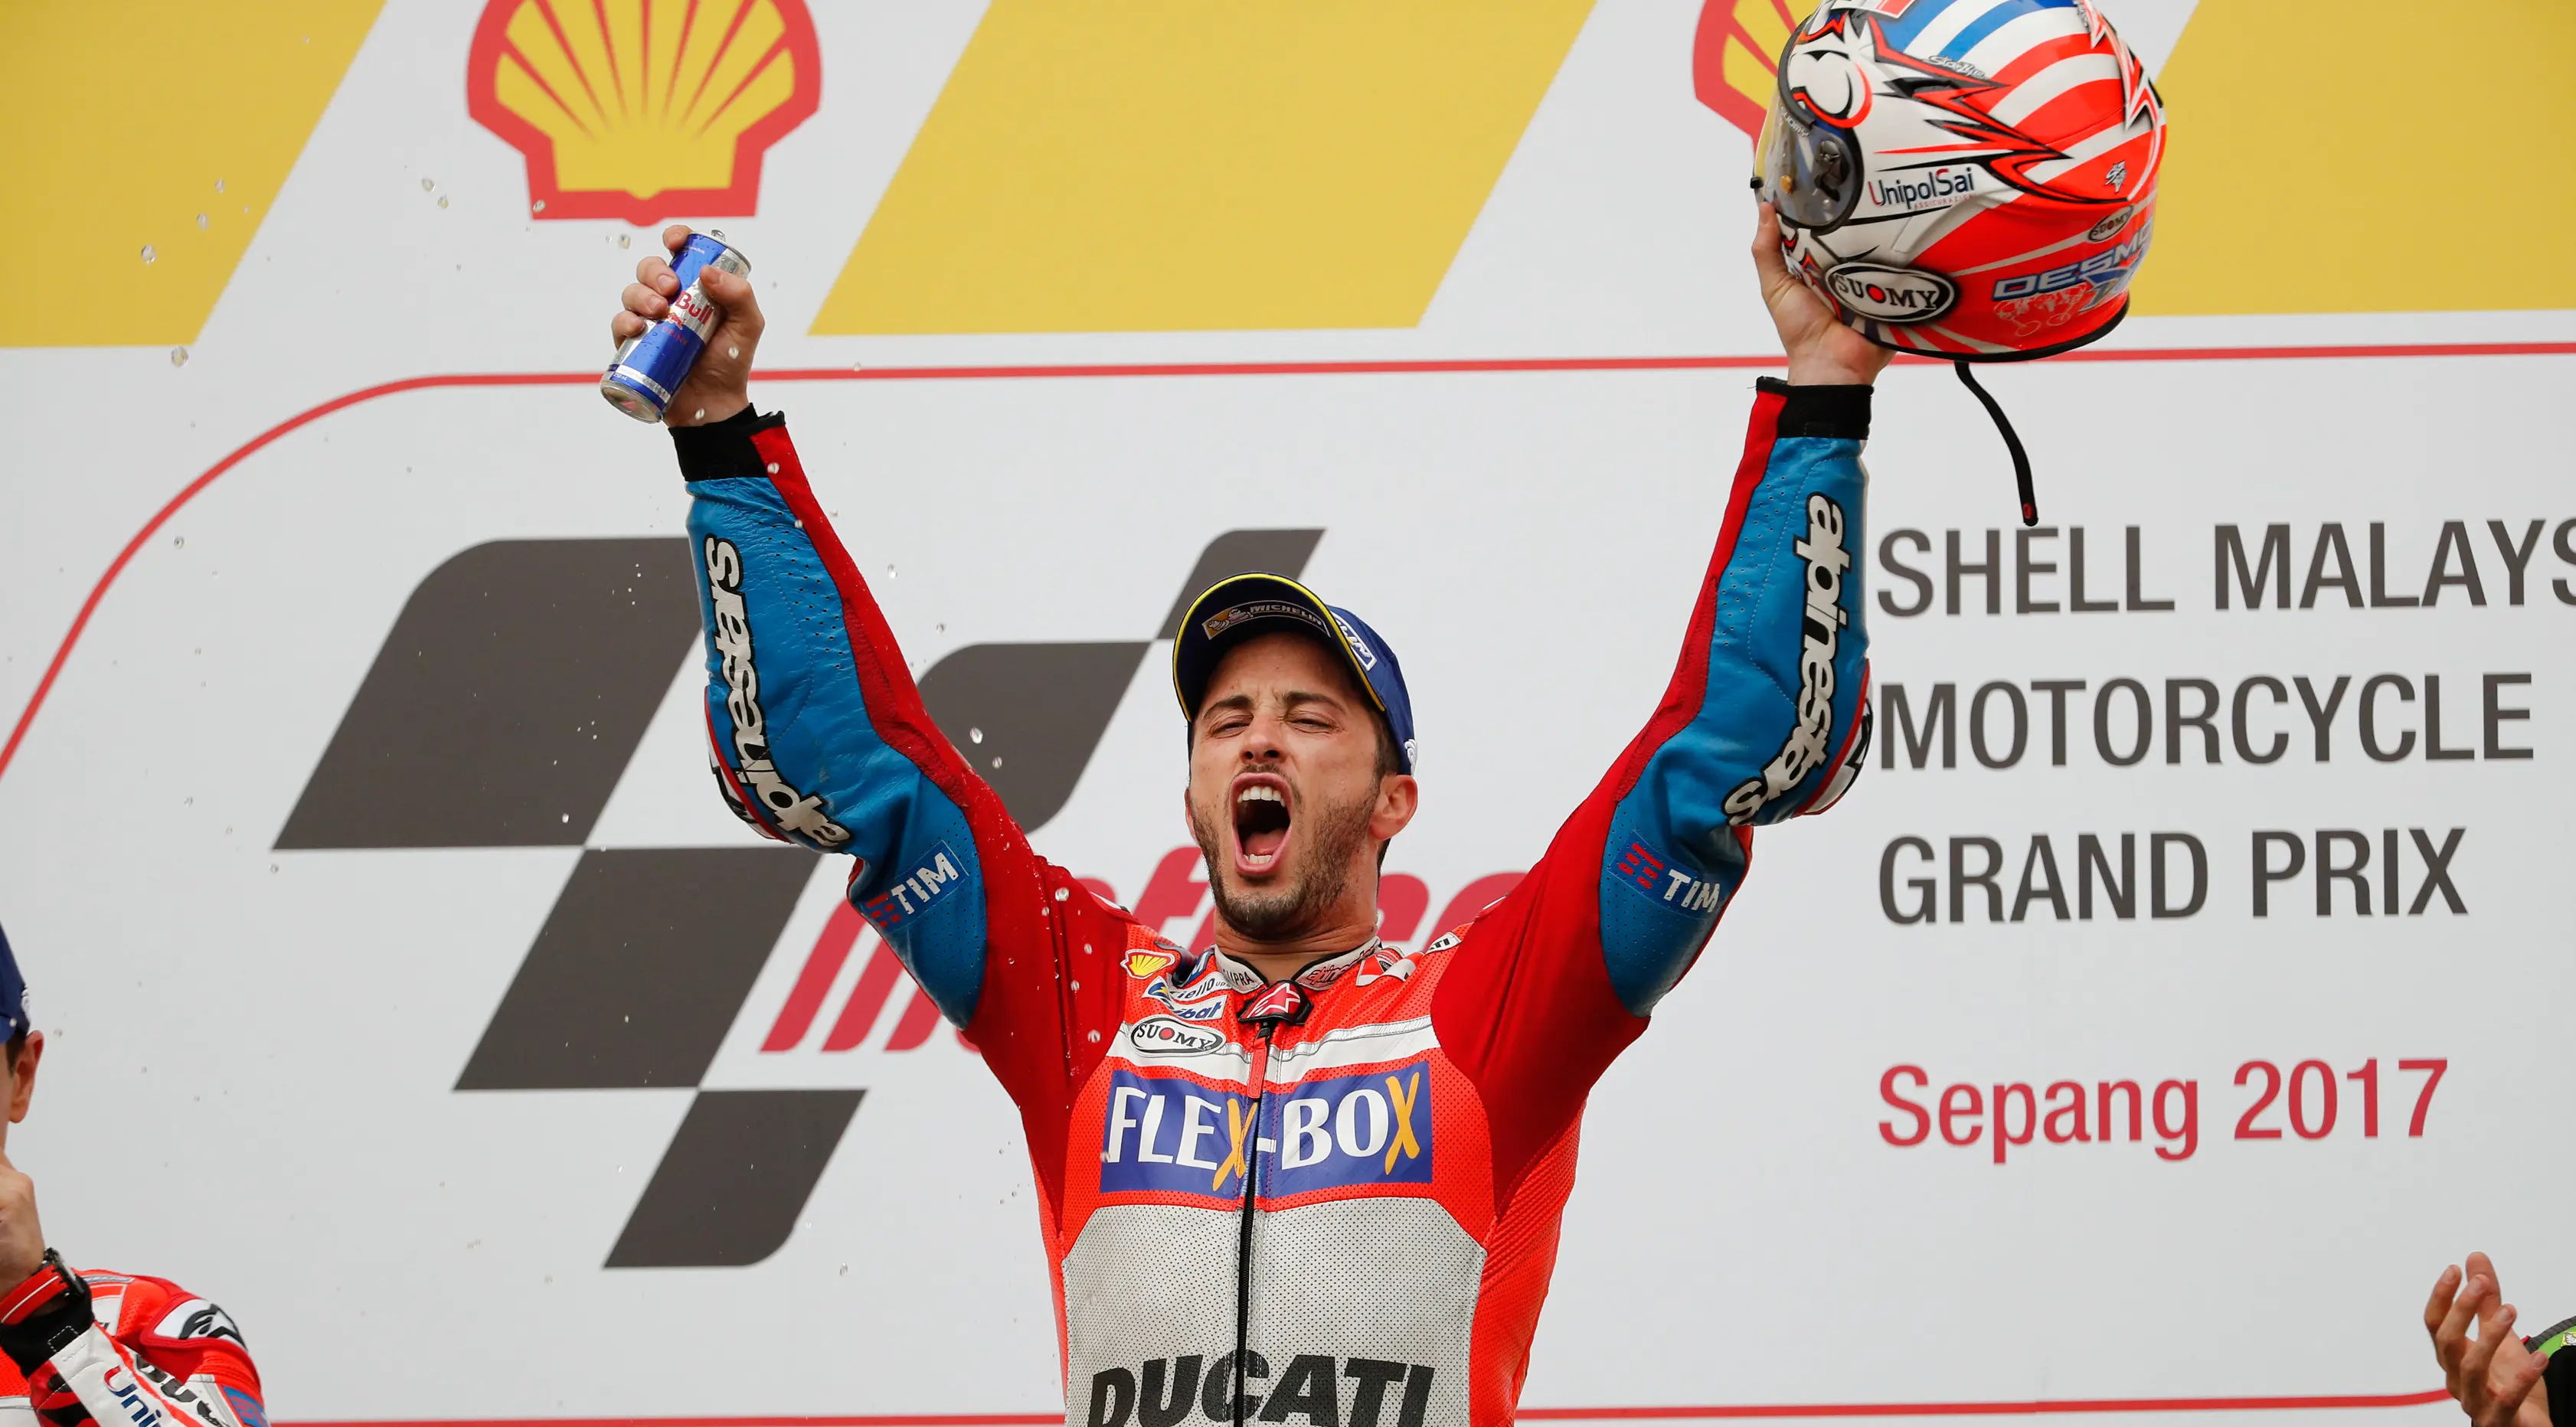 Pembalap Ducati Team, Andrea Dovizioso selebrasi di atas podium setelah berhasil memenangkan MotoGP Malaysia di sirkuit Sepang, Minggu (29/10). Dovizioso menyelesaikan balapan dengan catatan waktu 44 menit 51.497 detik. (AP/Vincent Thian)